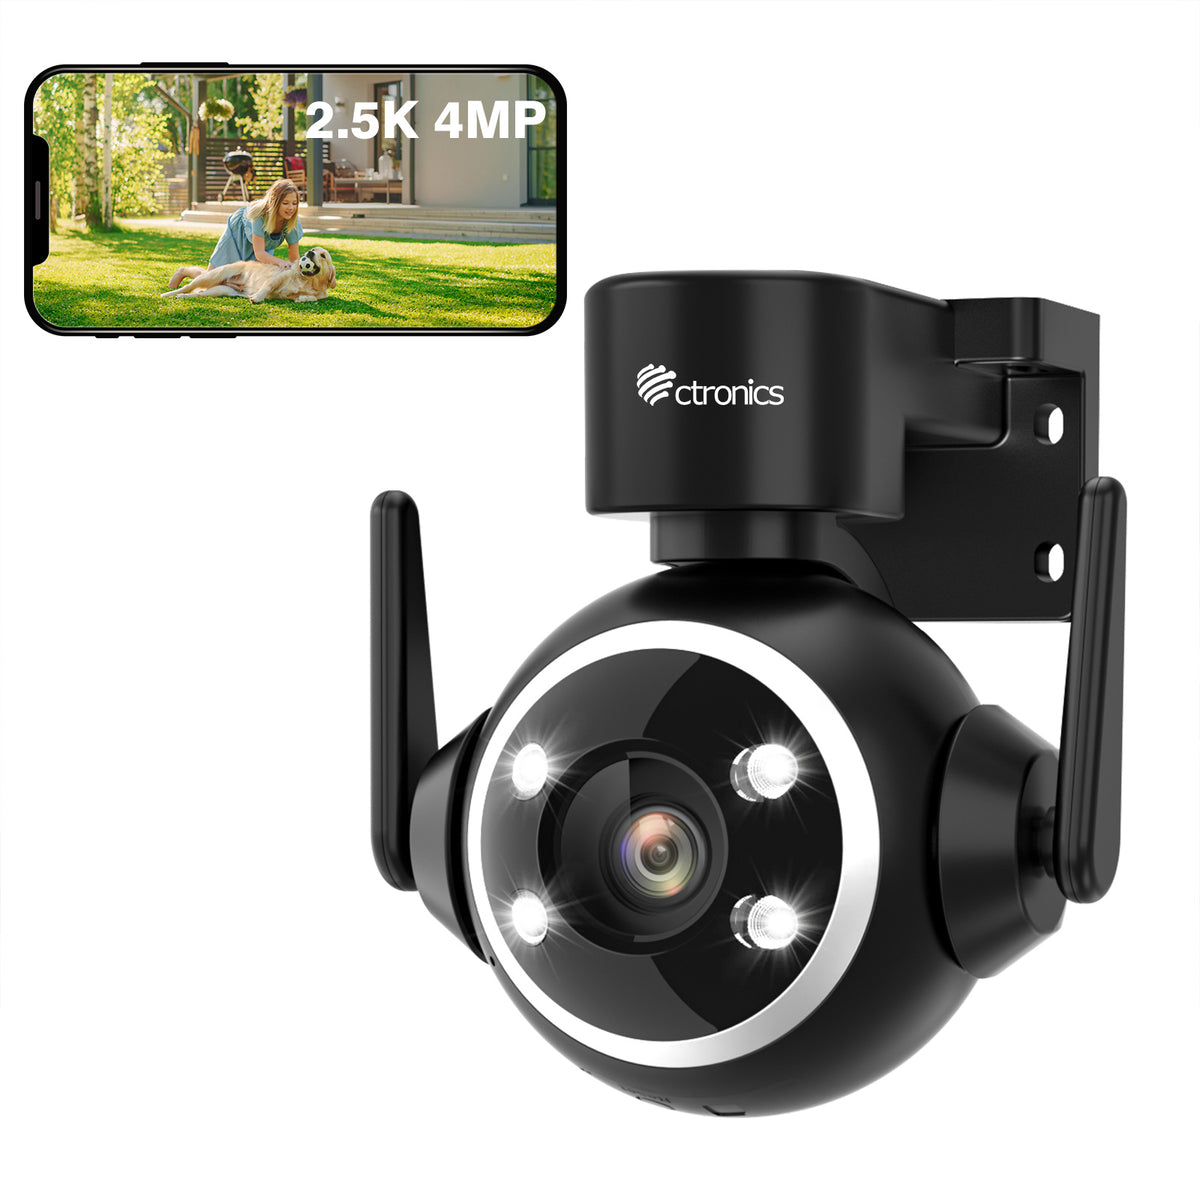 2.5K 4MP Caméra Surveillance WiFi Extérieure 2,4/5GHz PTZ Caméra IP 360° Vision Nocturne Couleur